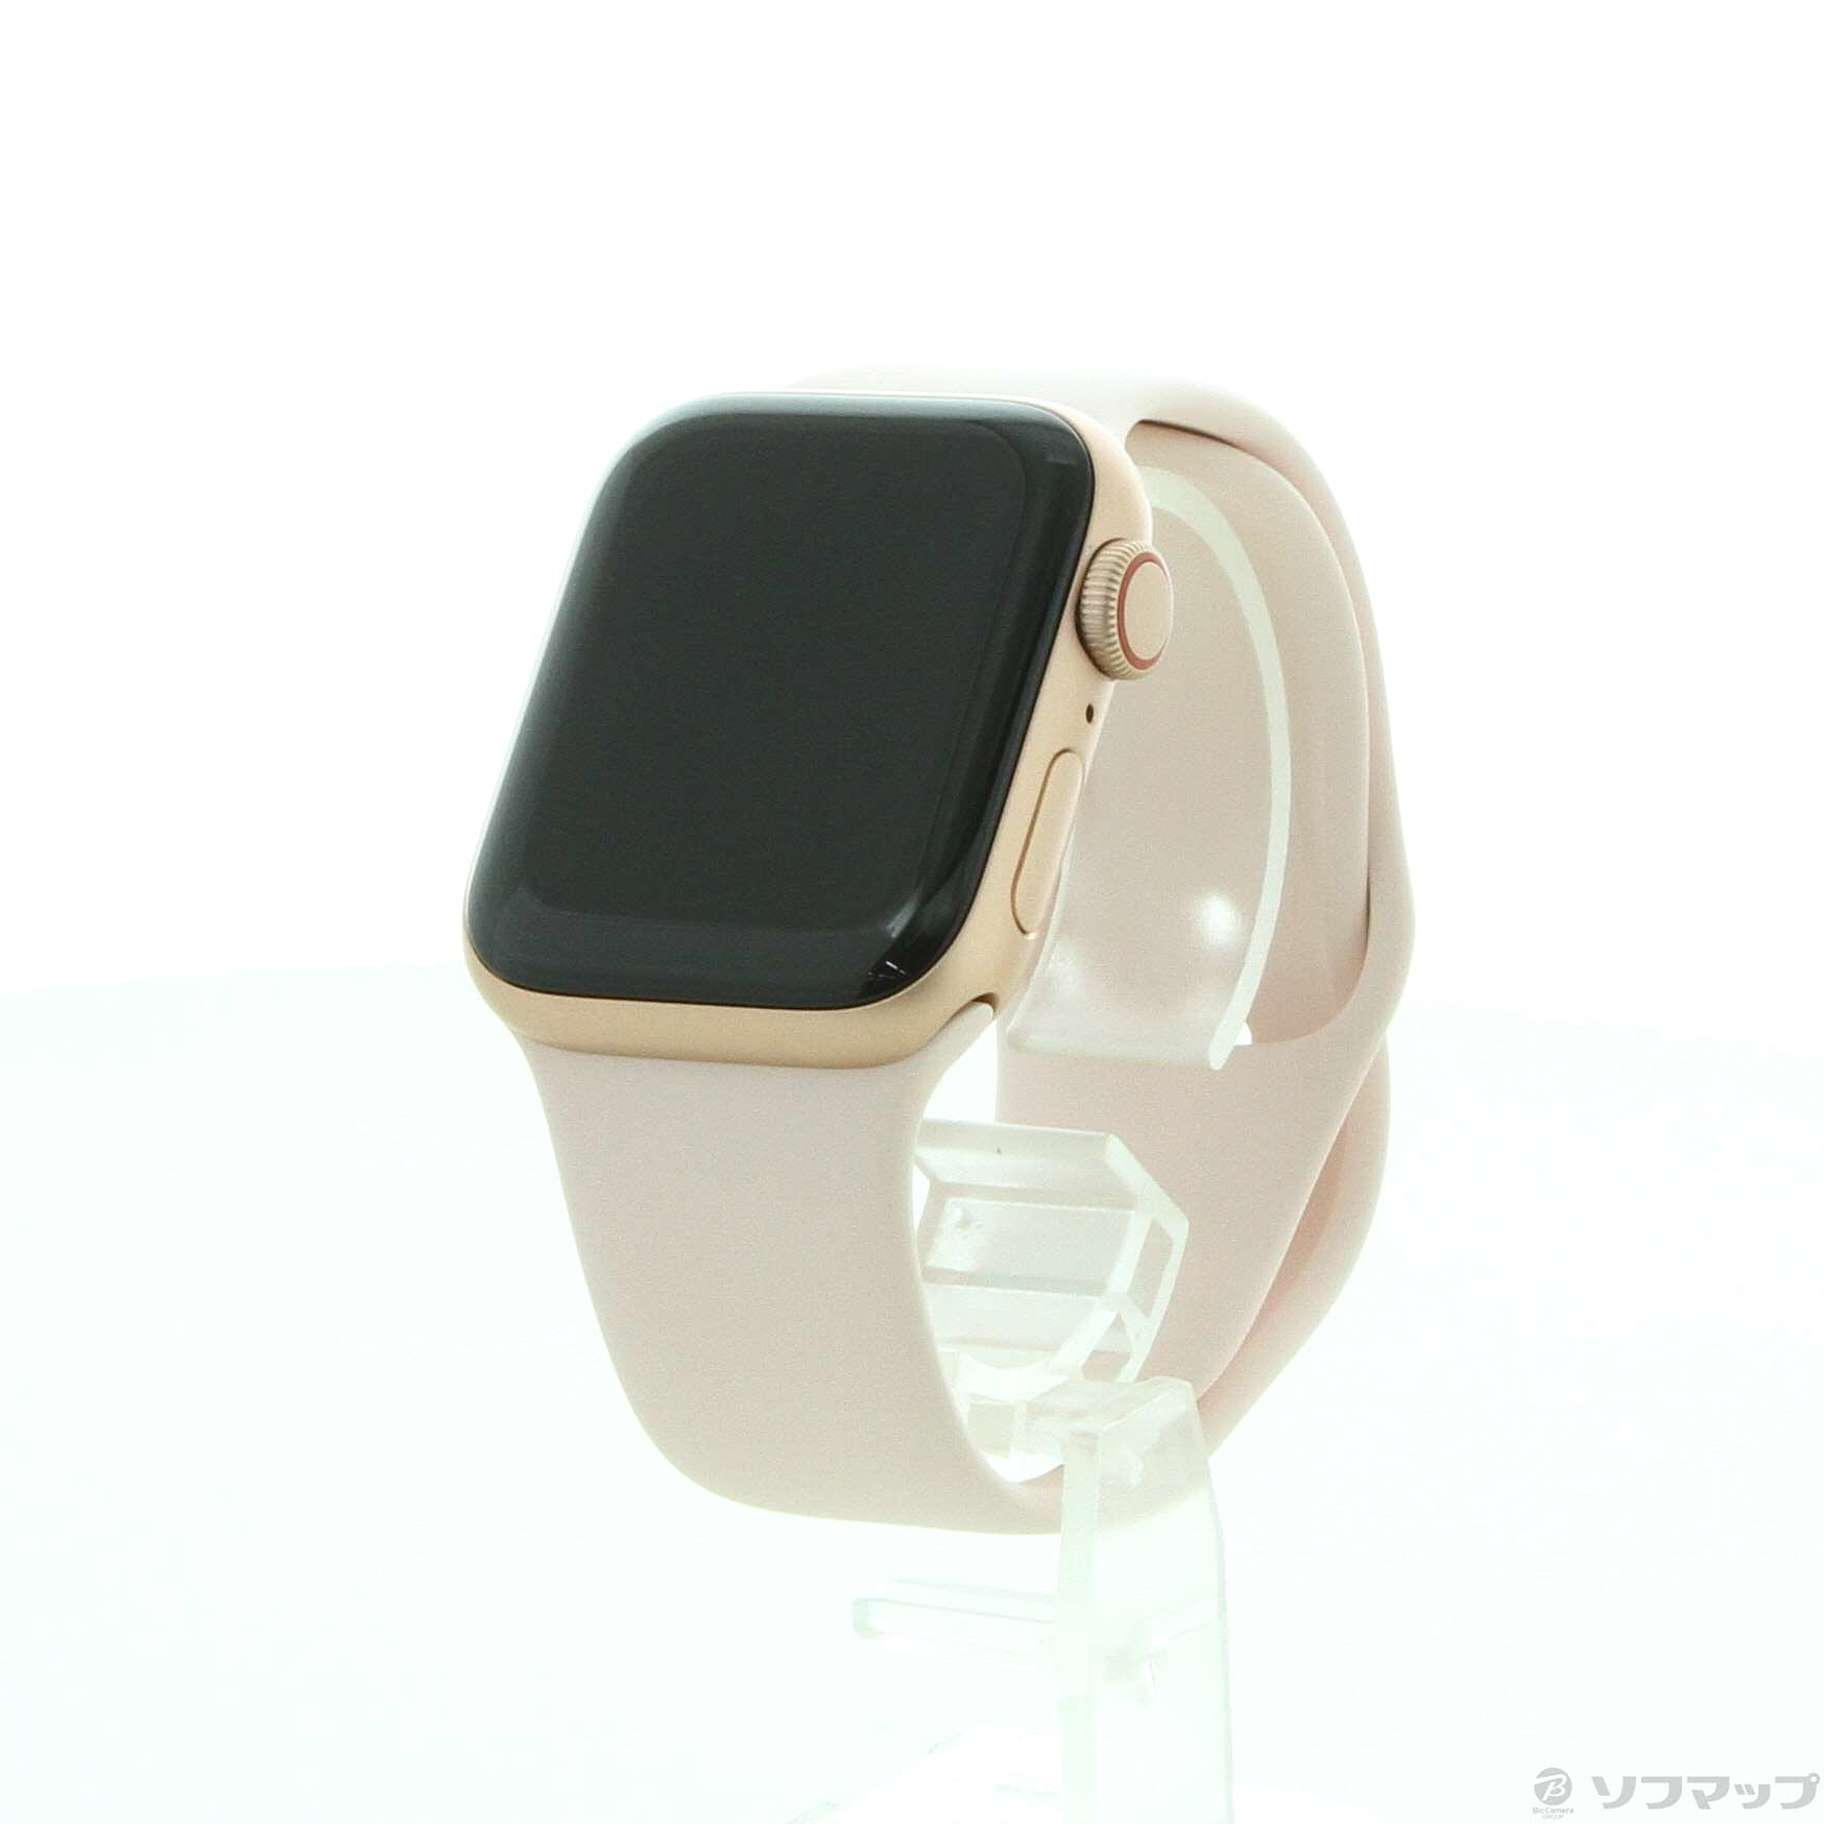 〔展示品〕 Apple Watch SE GPS + Cellular 40mm ゴールドアルミニウムケース ピンクサンドスポーツバンド